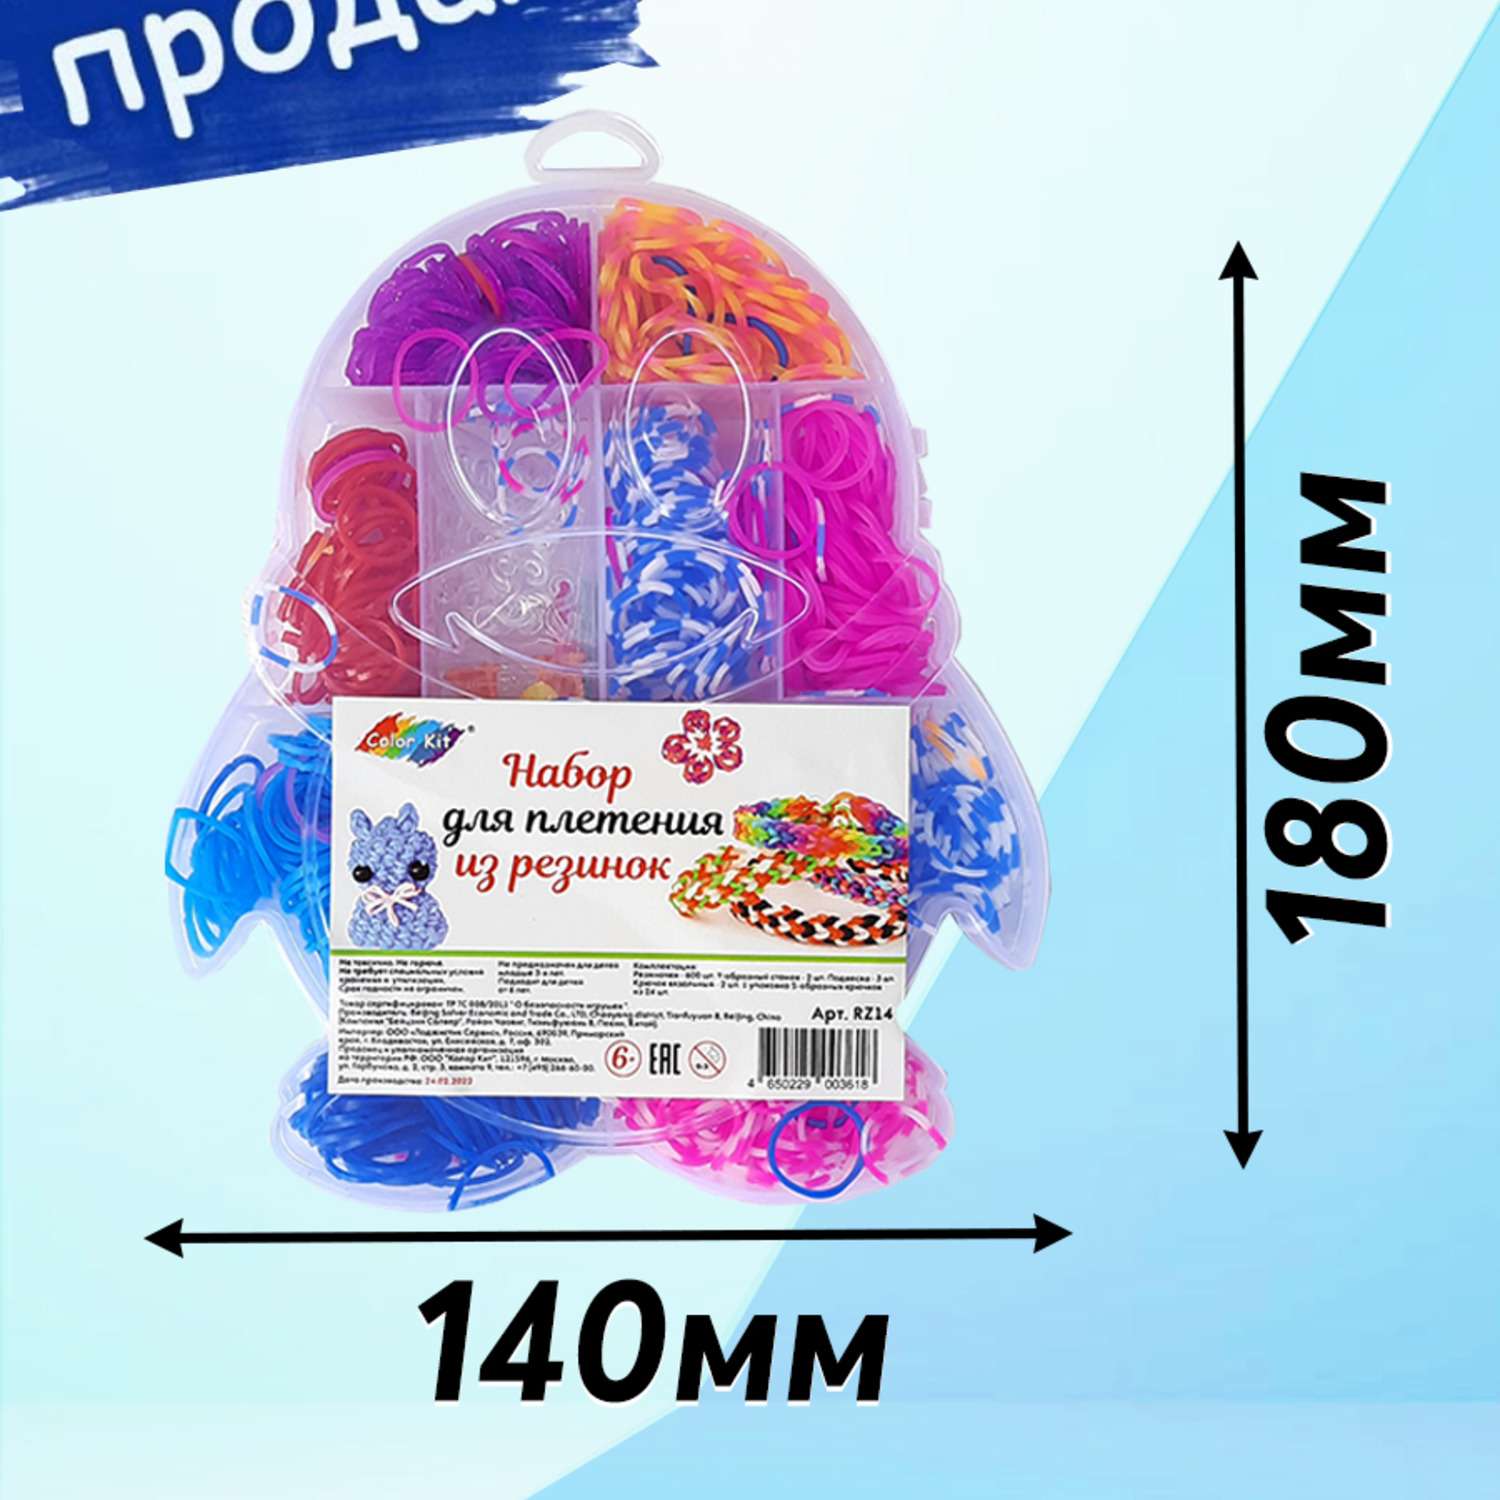 Наборы для плетения из бисера, пайеток - купить в Москве - баштрен.рф